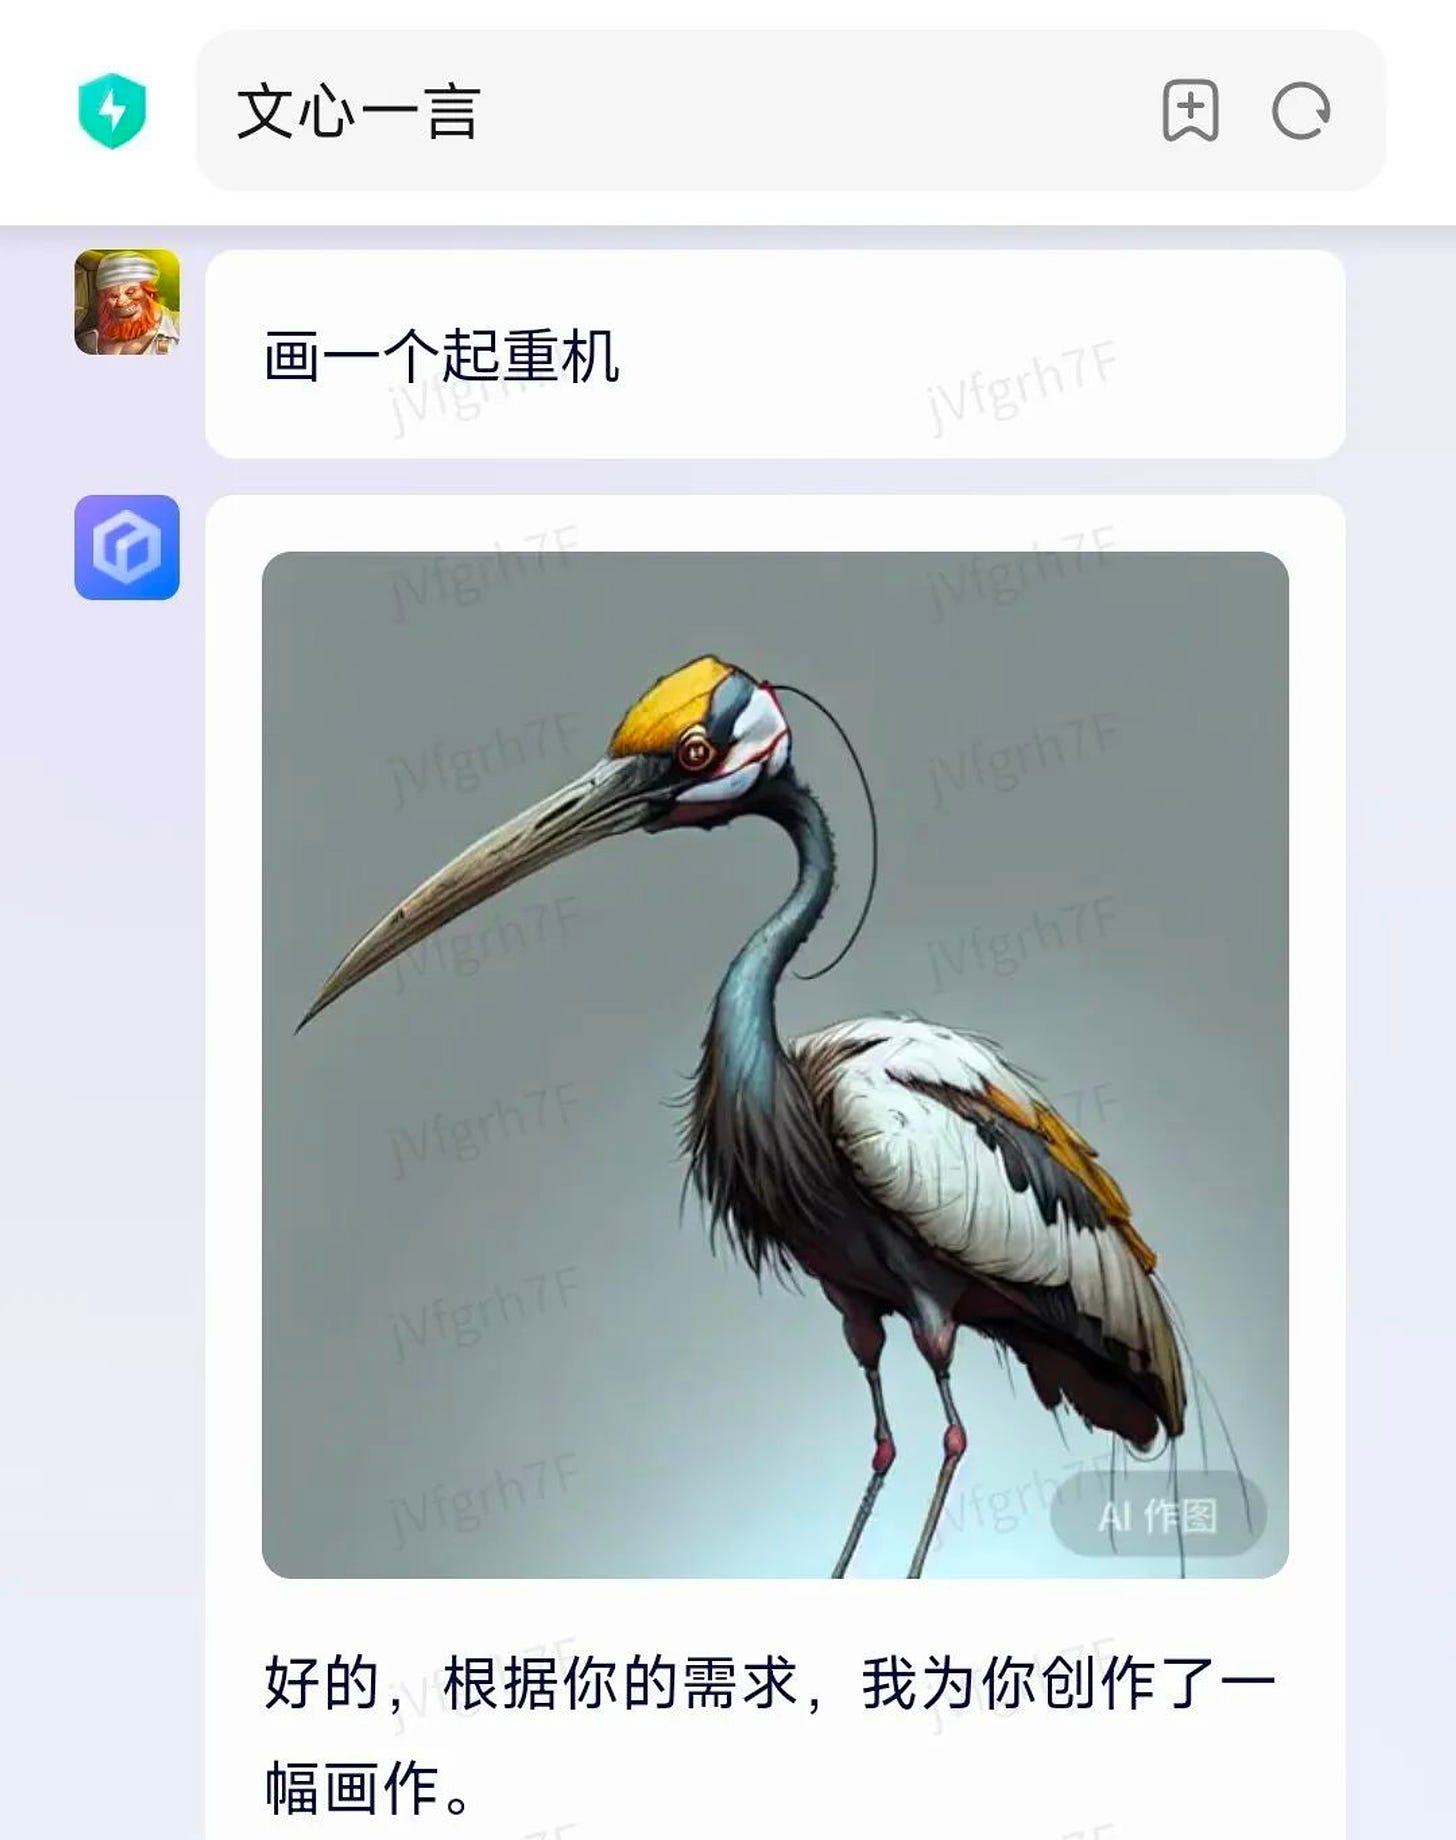 Baidu Ernie showed a crane (bird) when asked to draw a crane (machine) 起重机.